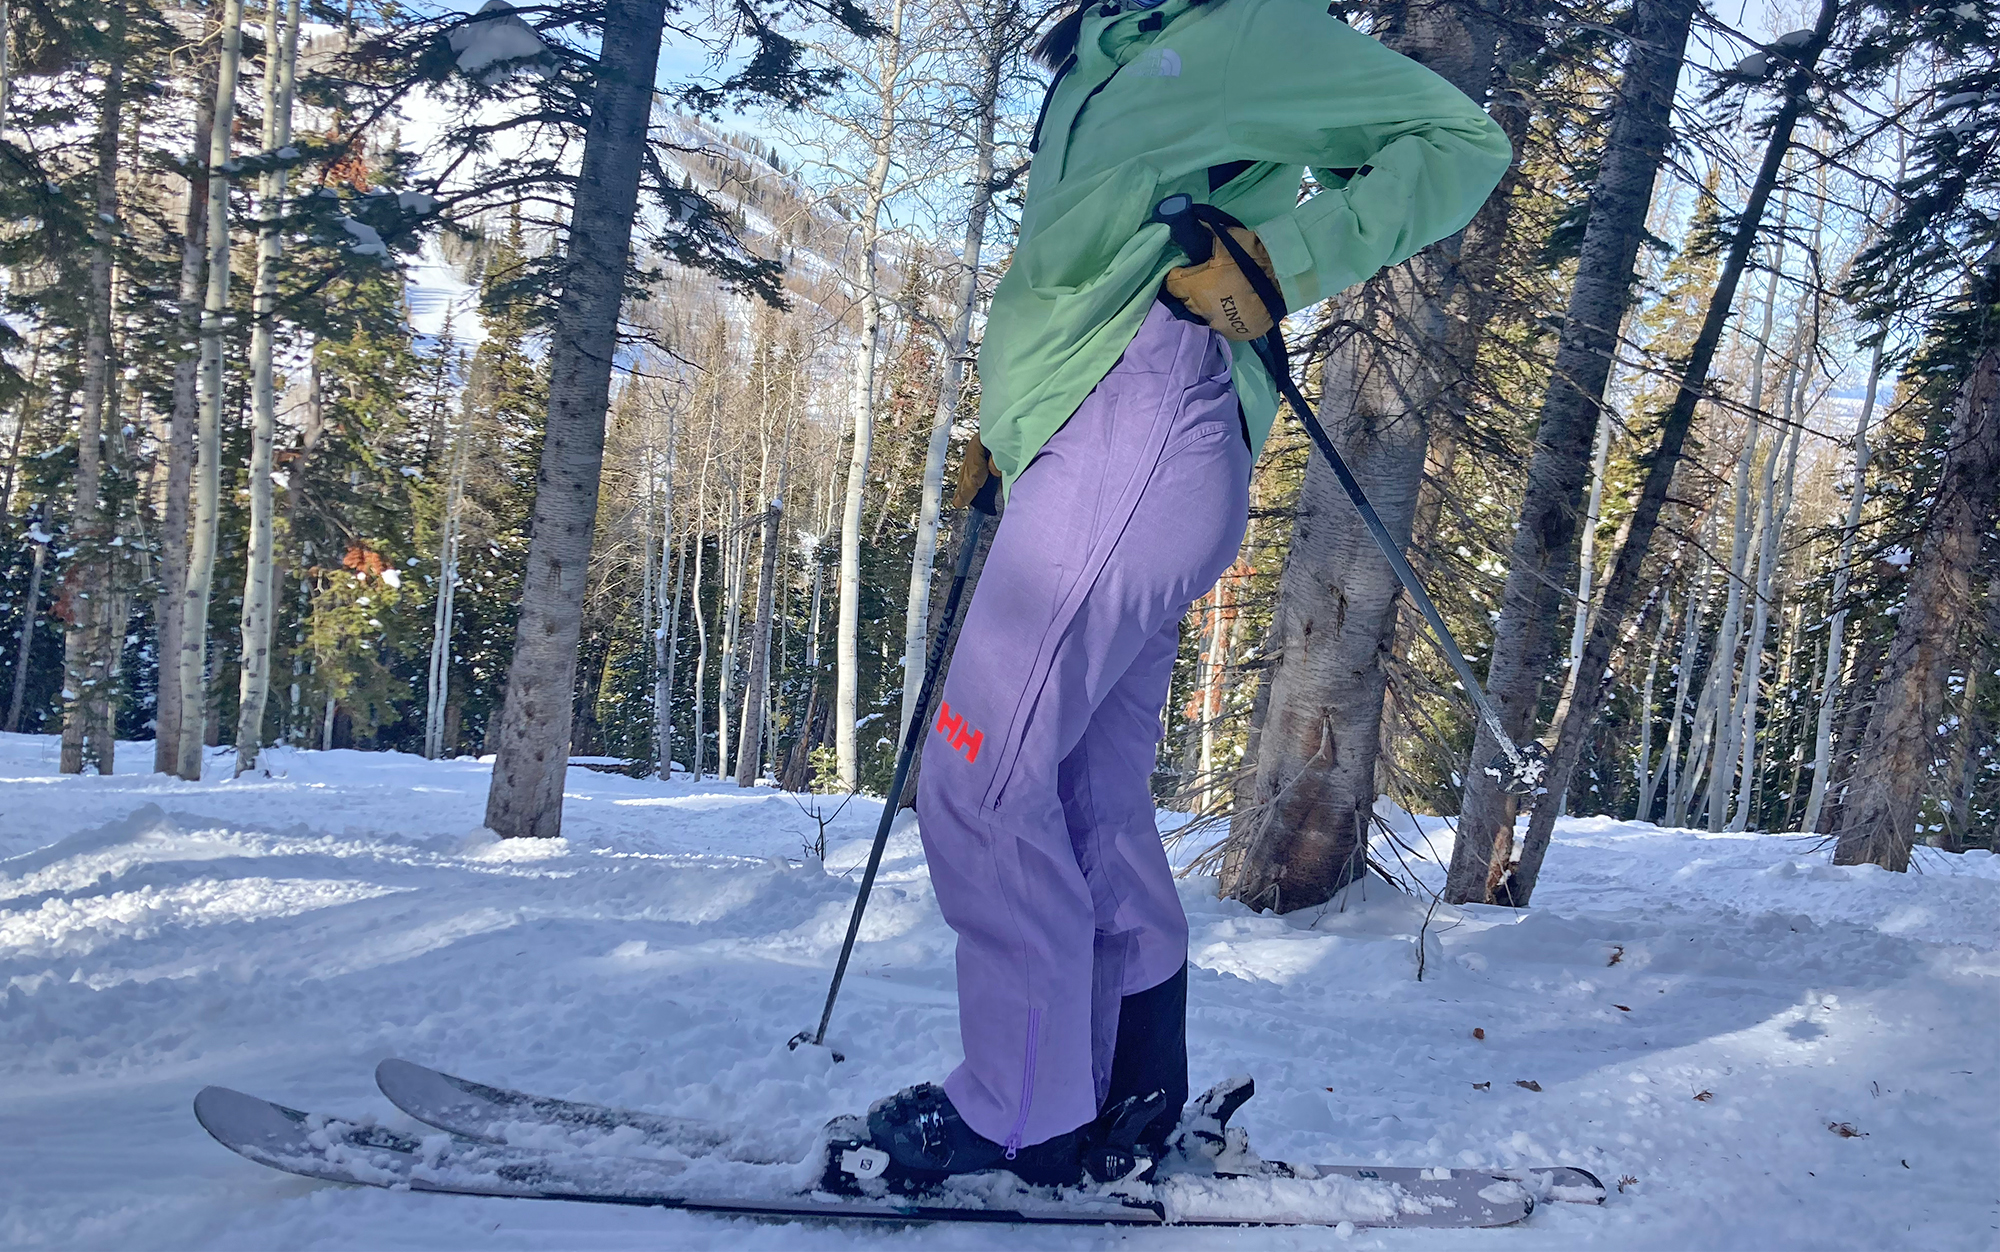 Powderqueen Women’s Ski Bibs